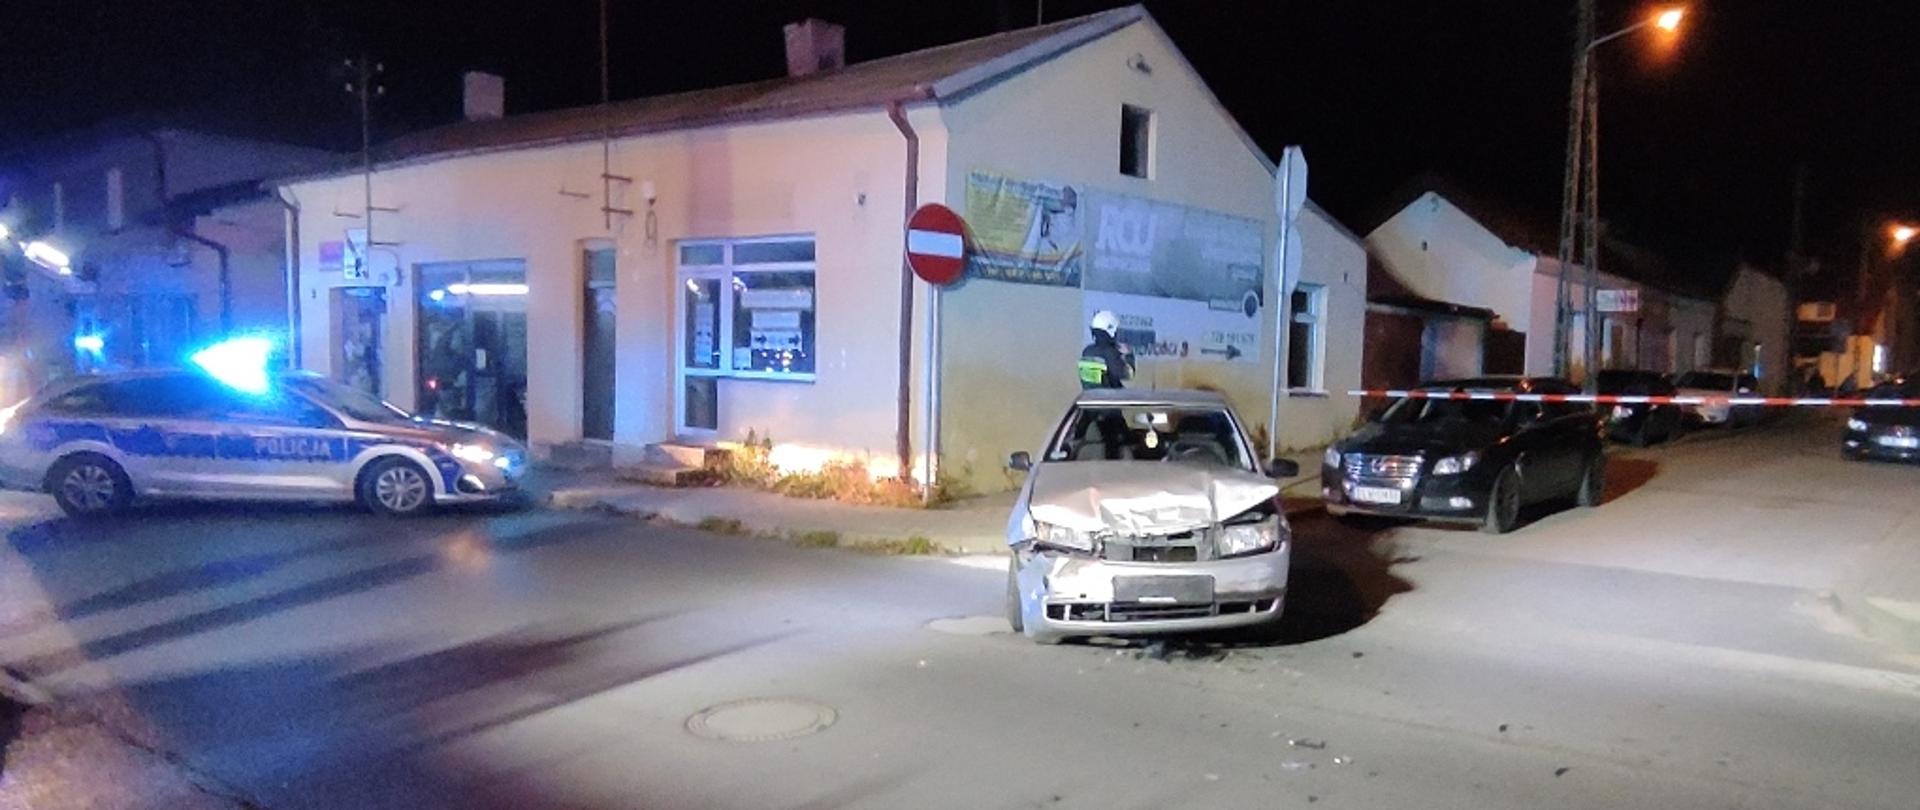 Skrzyżowanie ulic Kilińskiego i Kościuszki, pora nocna na pierwszym planie rozbity samochód osobowy, na drugim planie zabezpieczenie miejsca akcji poprzez radiowóz Policji oraz biało–czerwoną taśmę.